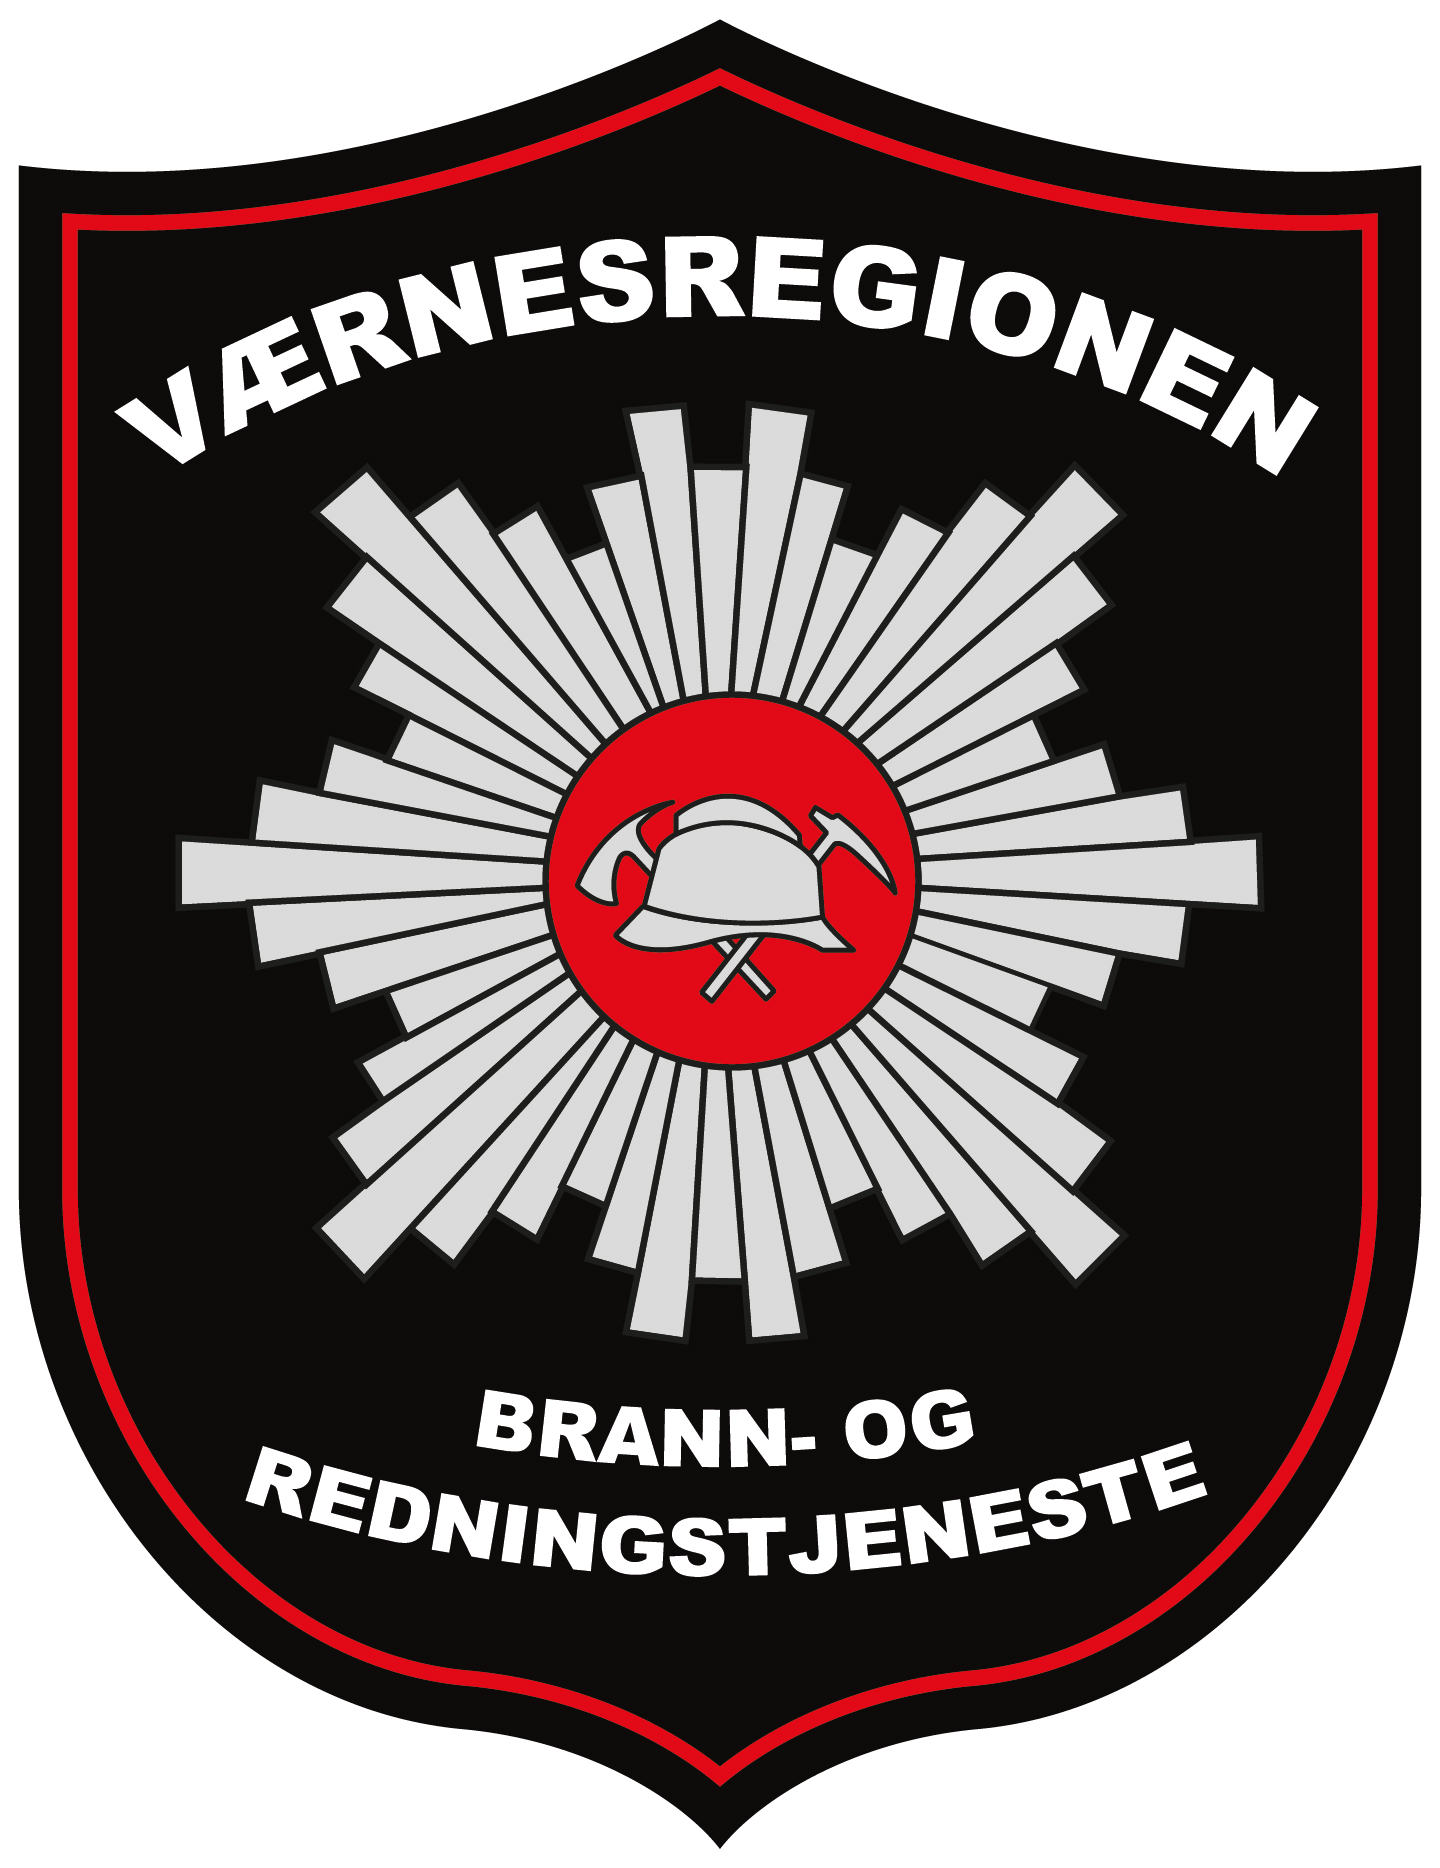 Værnesregionen brann- og redningstjeneste